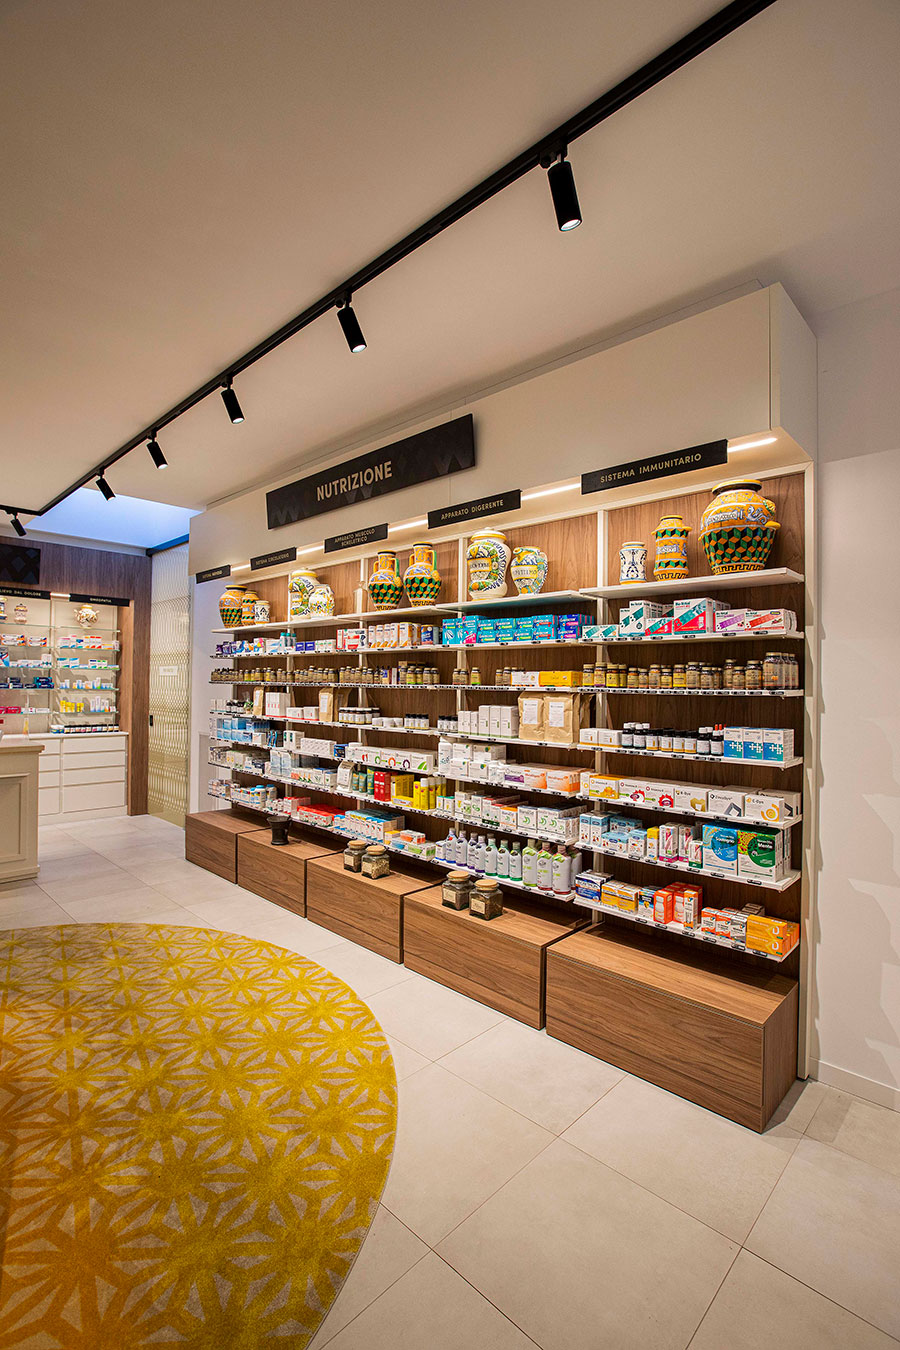 Lighting Sant’Andrea pharmacy